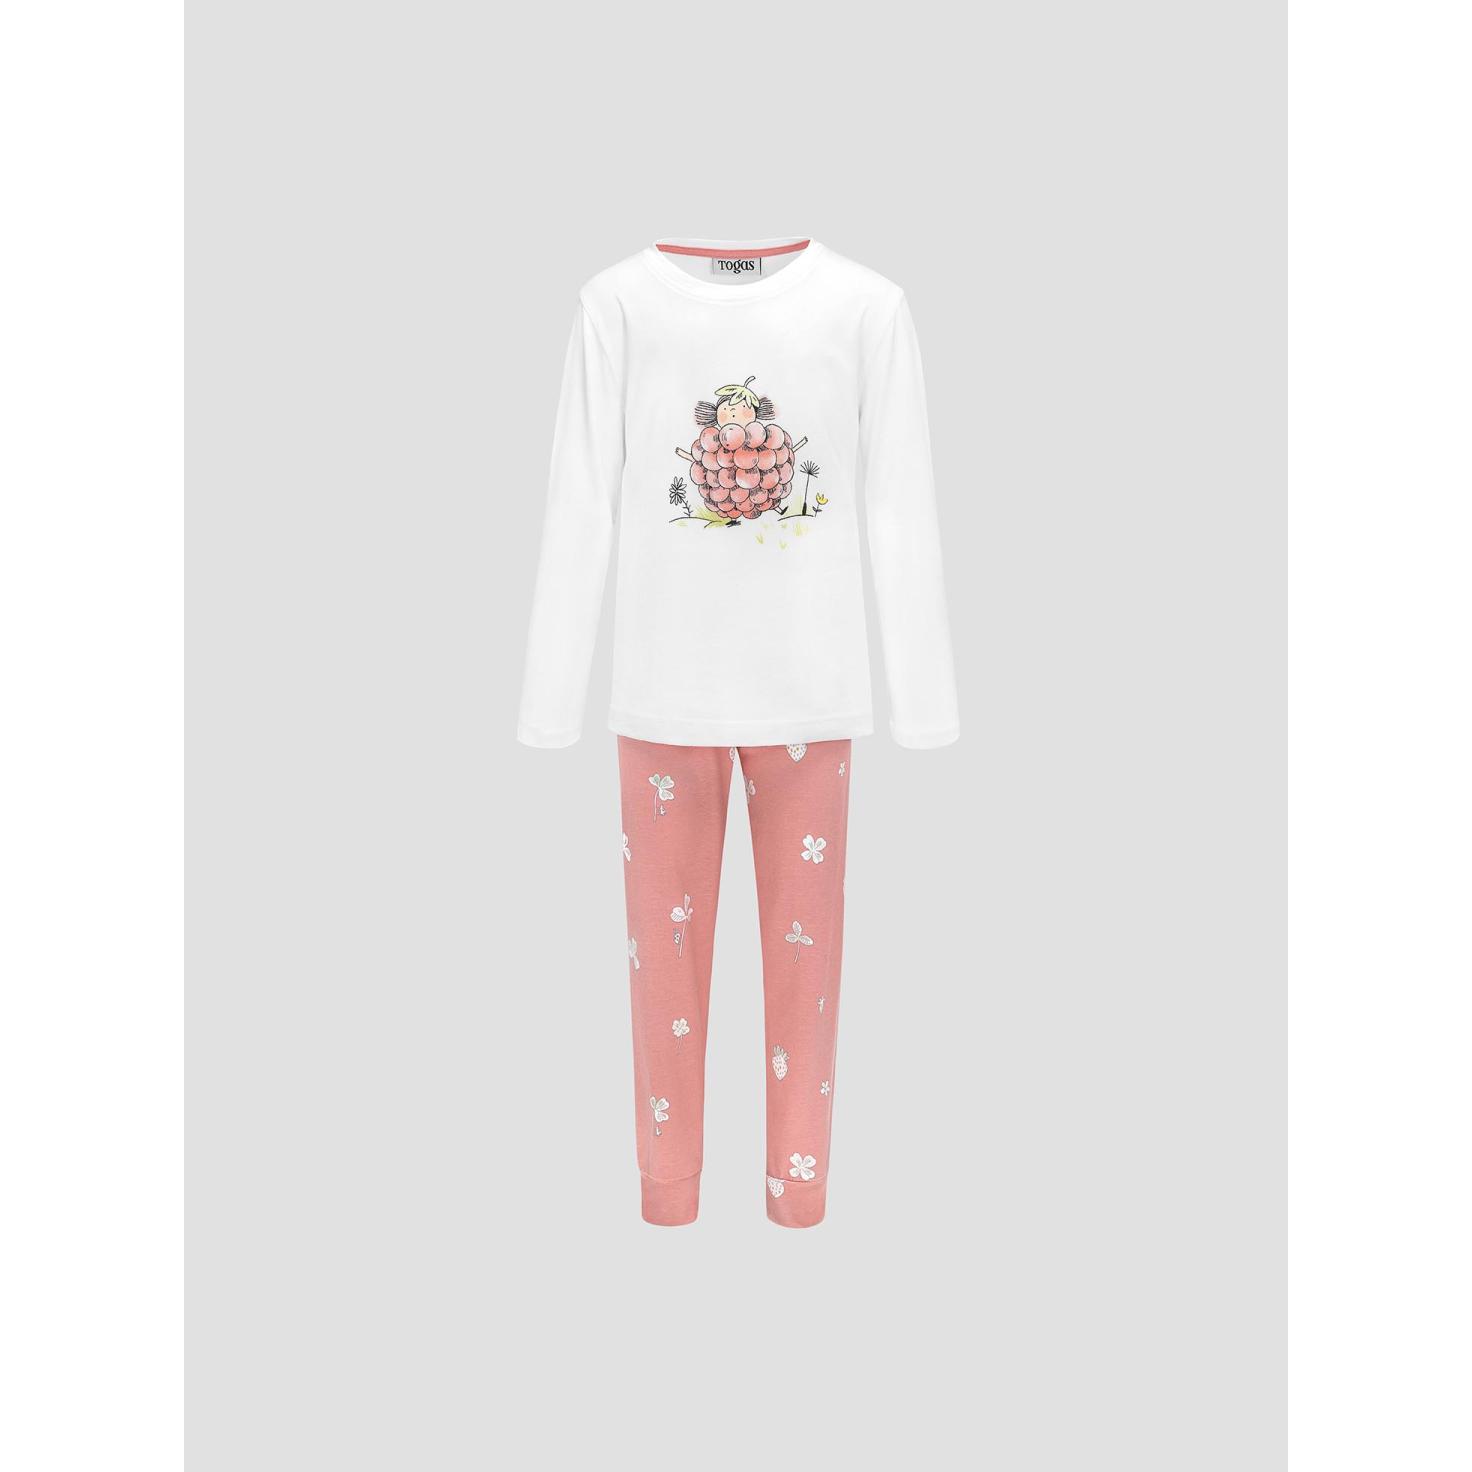 Пижама для девочек Kids by togas Стробби бело-розовый 128-134 см пижама togas эсме бело сиреневая женская